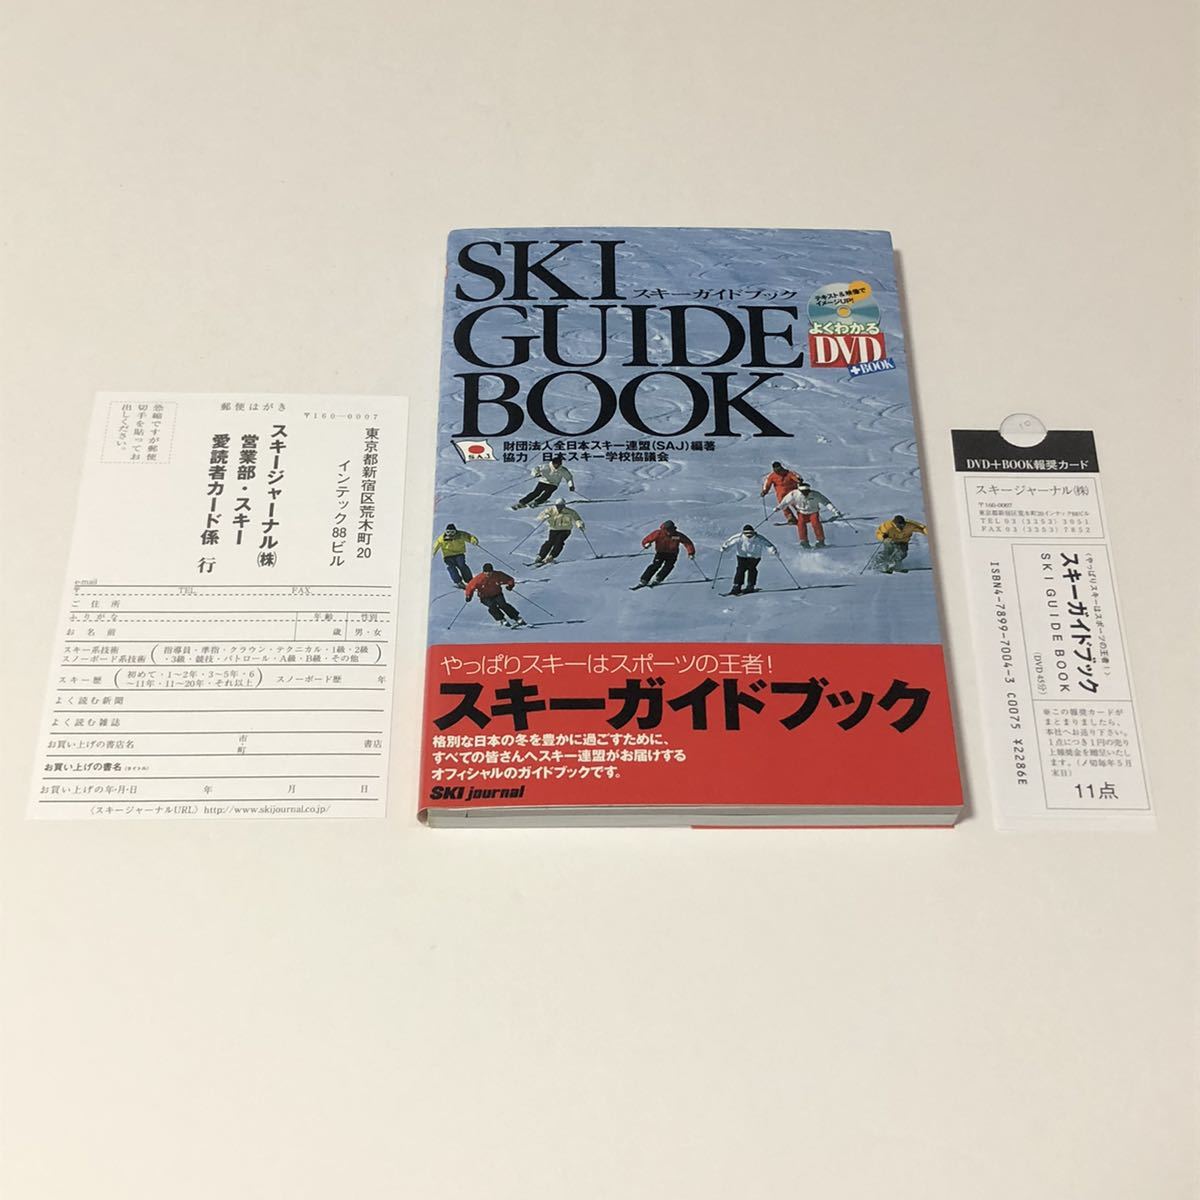 よくわかるDVD+BOOK スキーガイドブック 財団法人全日本スキー連盟 スキージャーナル株式会社 SKI GUIDE BOOK